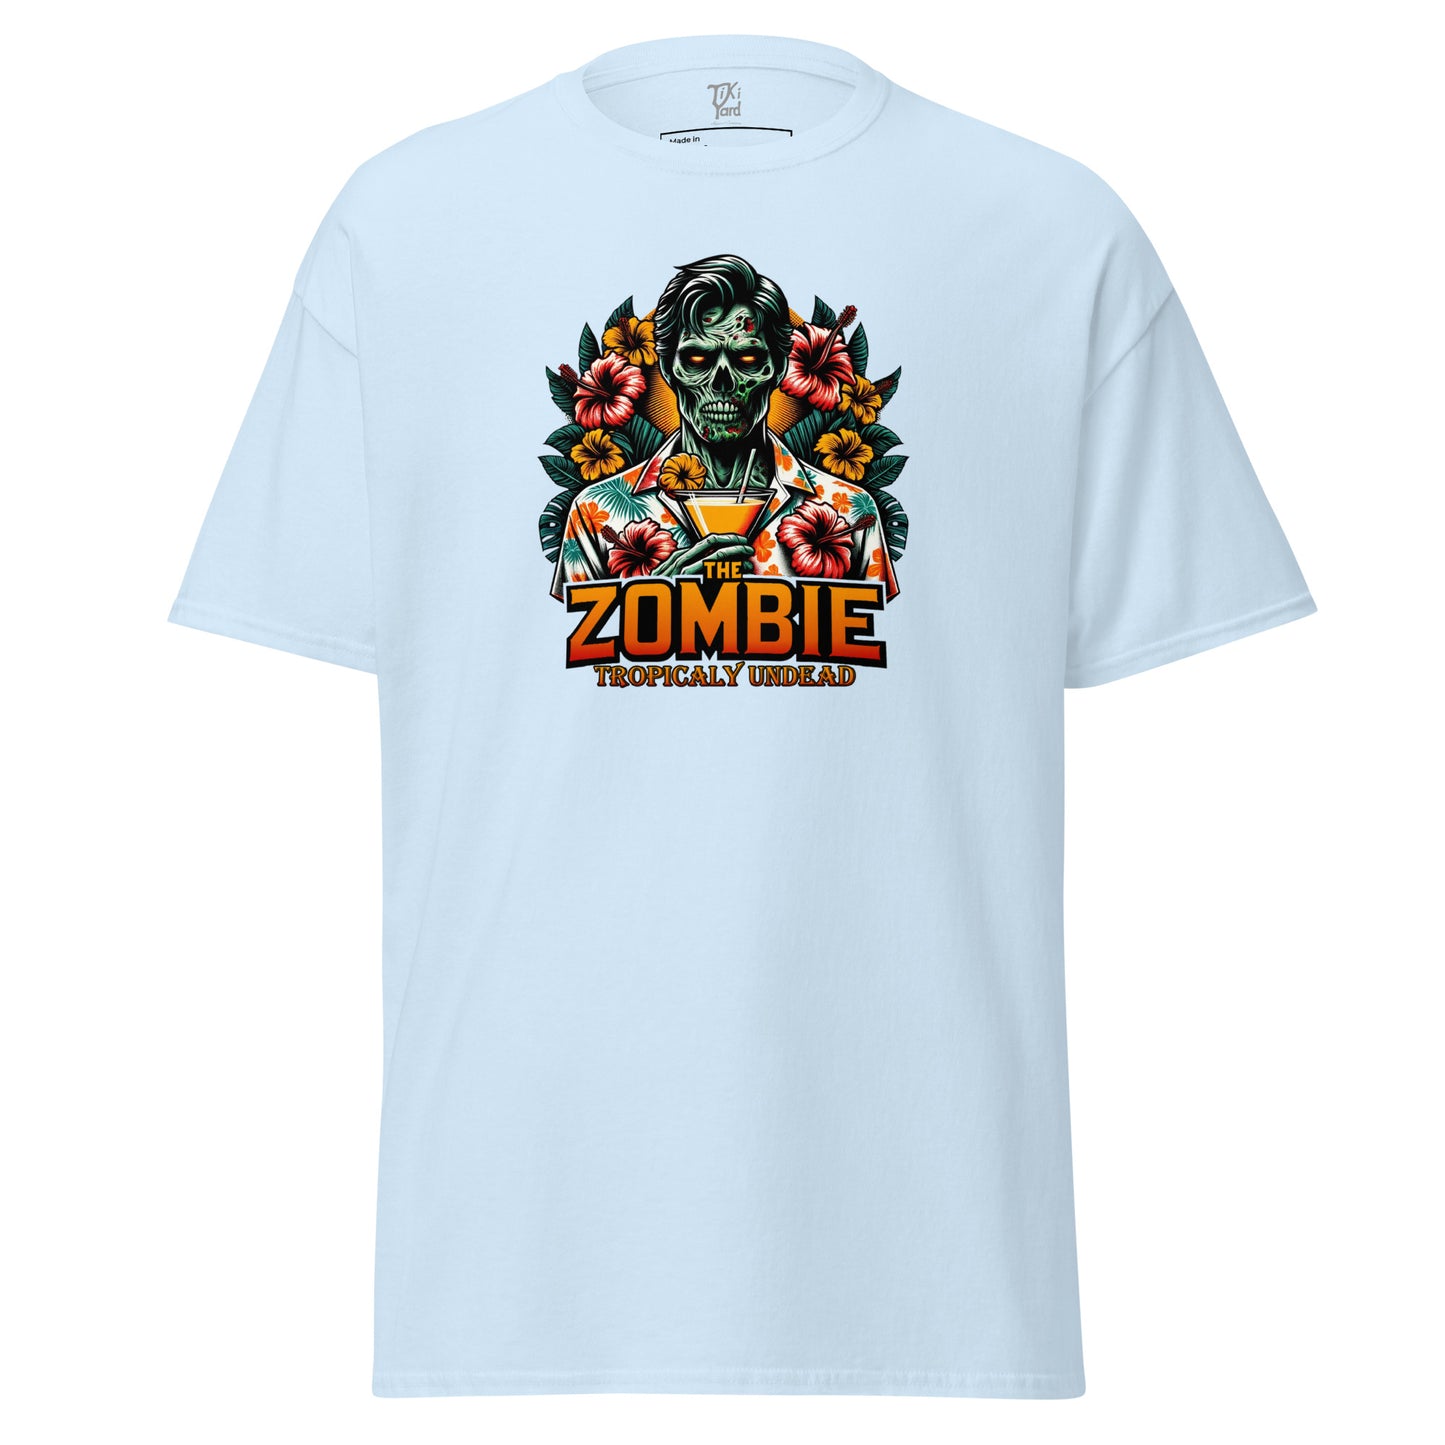 The Zombie - Men's T-Shirt